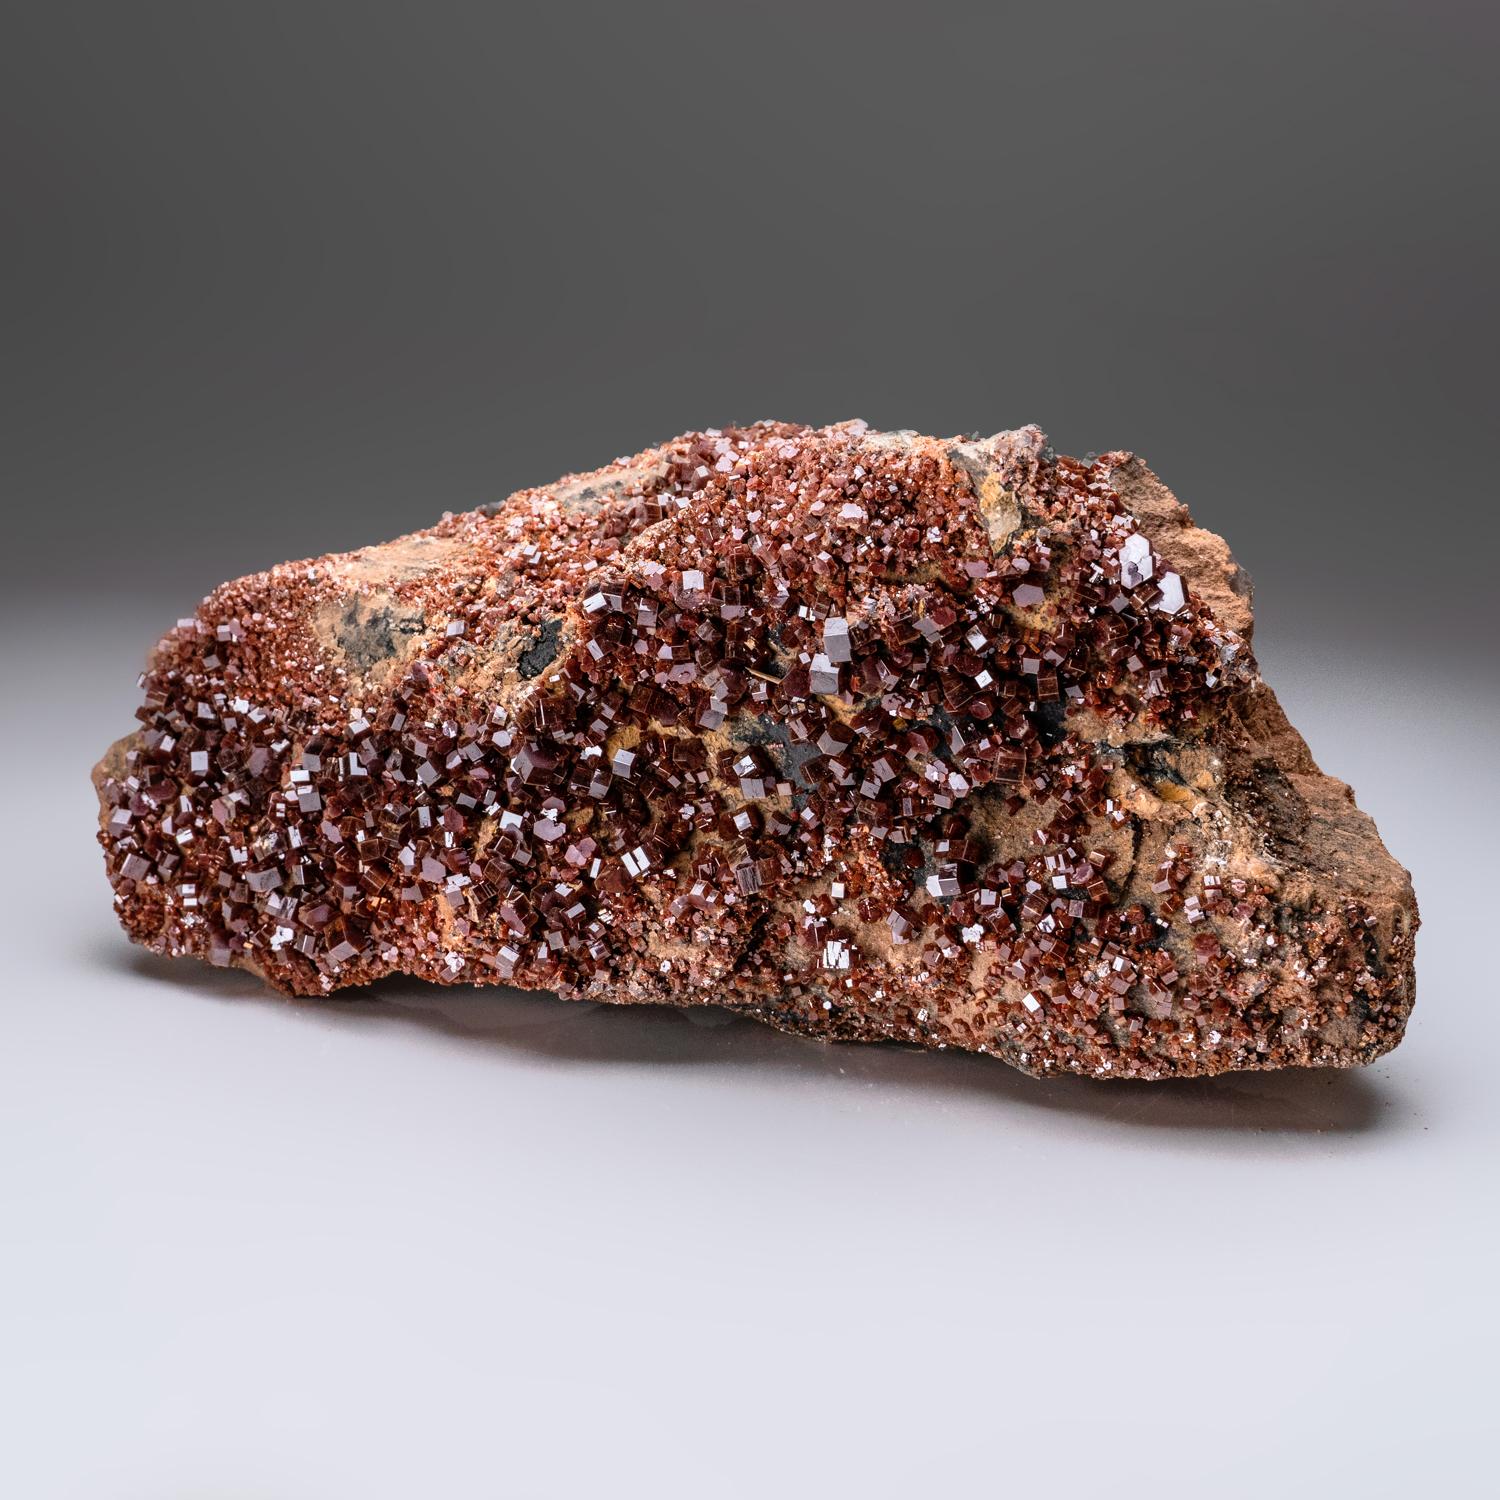 De Mibladen, montagnes de l'Atlas, province de Khénifra, Maroc

Exceptionnel amas de cristaux hexagonaux de vanadinites rouge vif. Ce spécimen présente un éclat vitreux avec de la barytine sur une matrice de Gossan brun. Grands cristaux bien définis